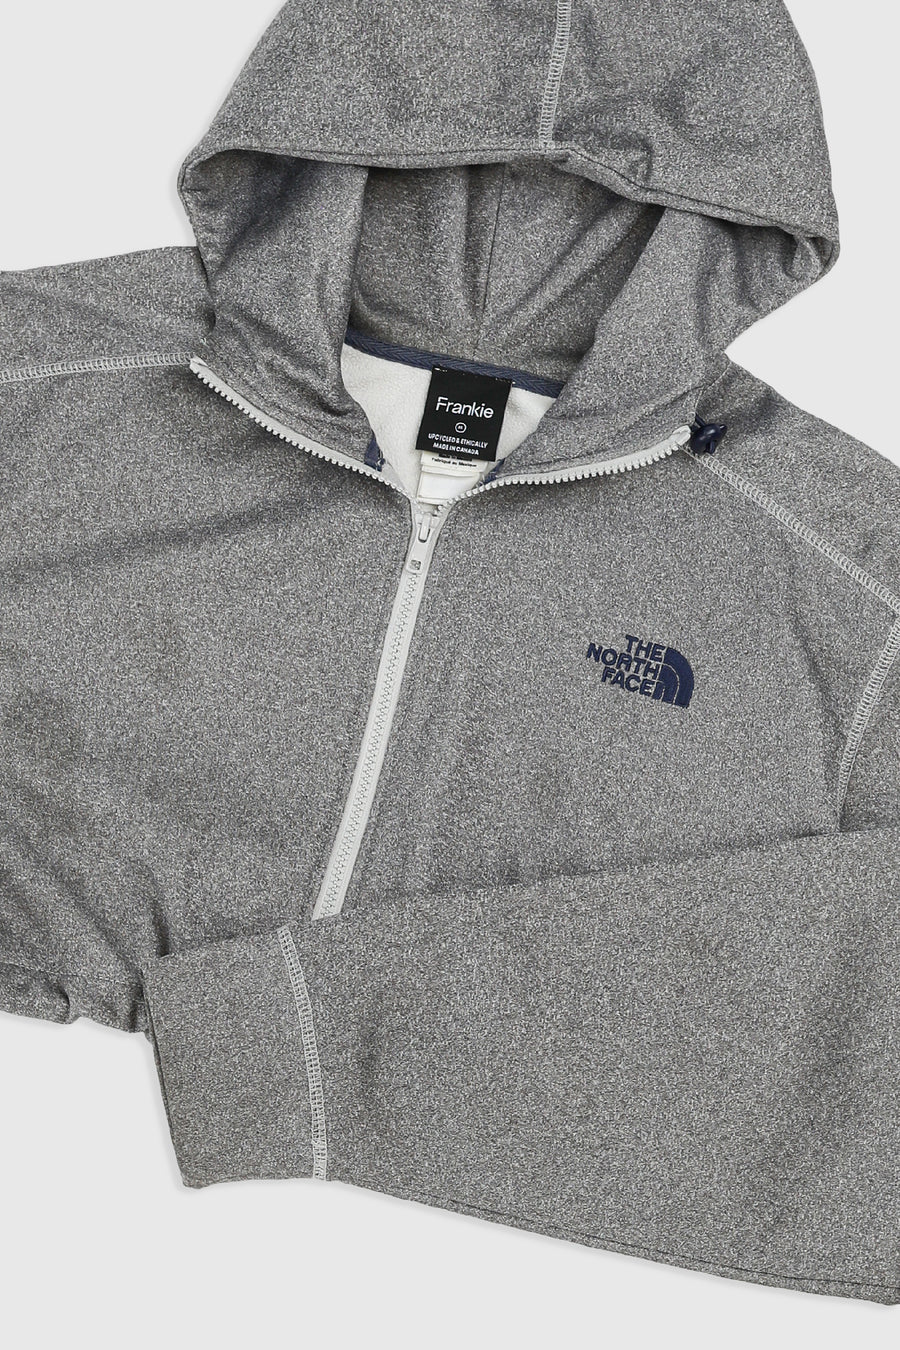 Rework North Face Cinched Crop Sweatshirt - XL